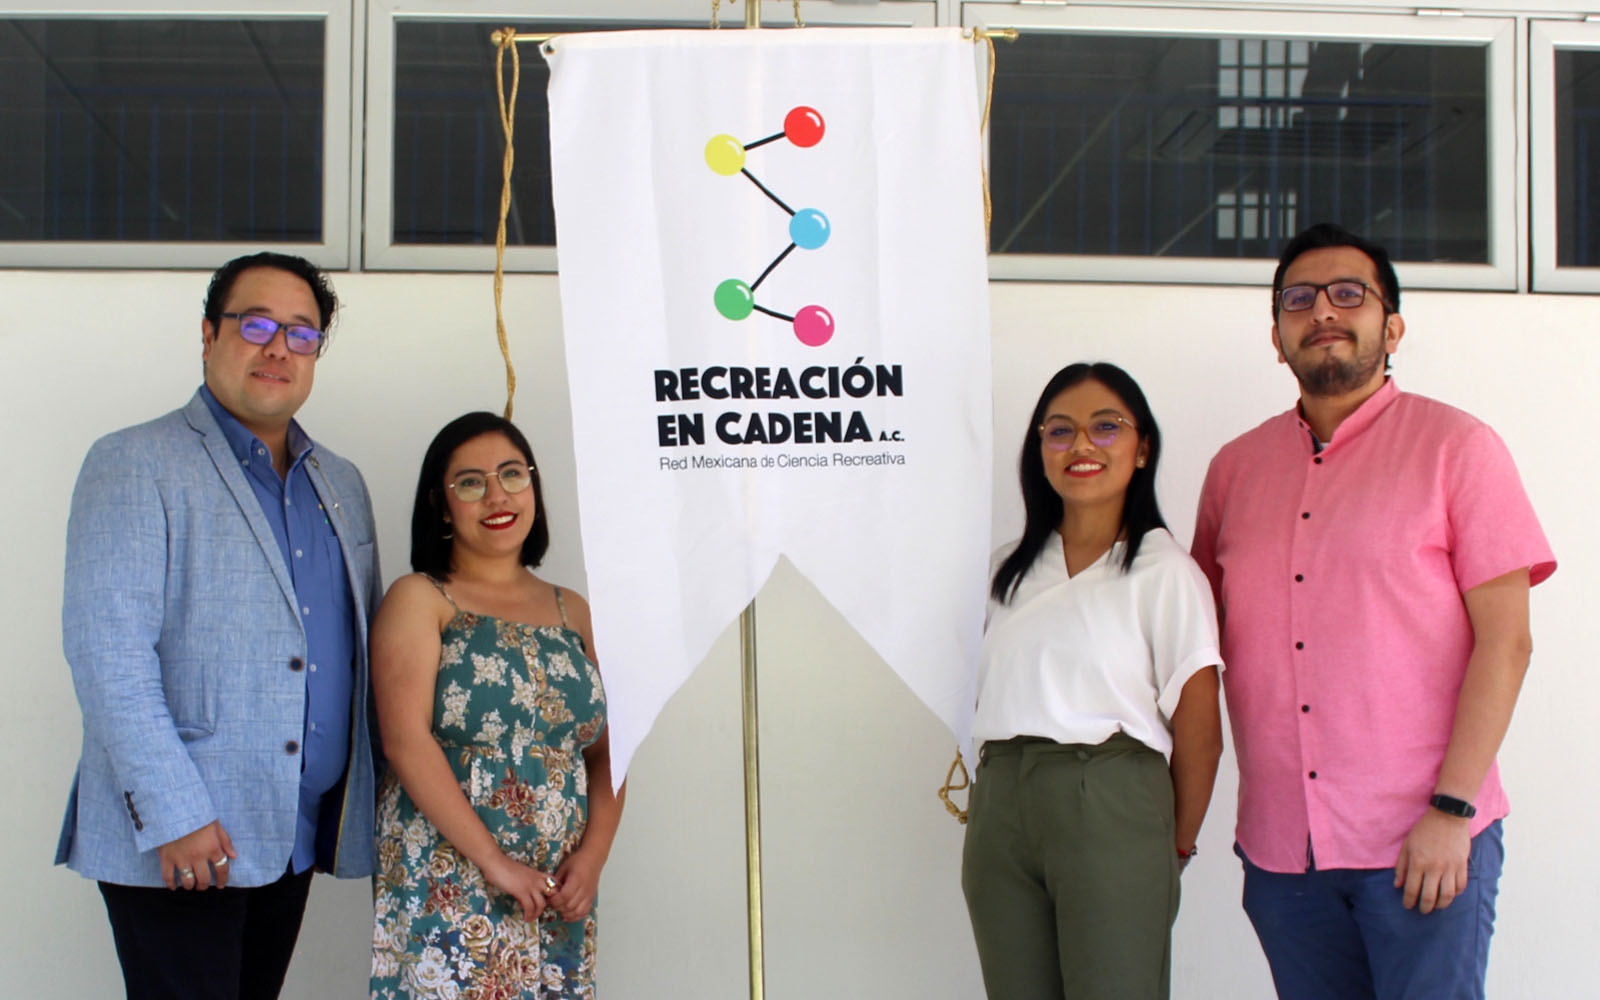 1 / 4 - Nuevo Consejo Directivo en Recreación en Cadena AC: Red Mexicana de Ciencia Recreativa